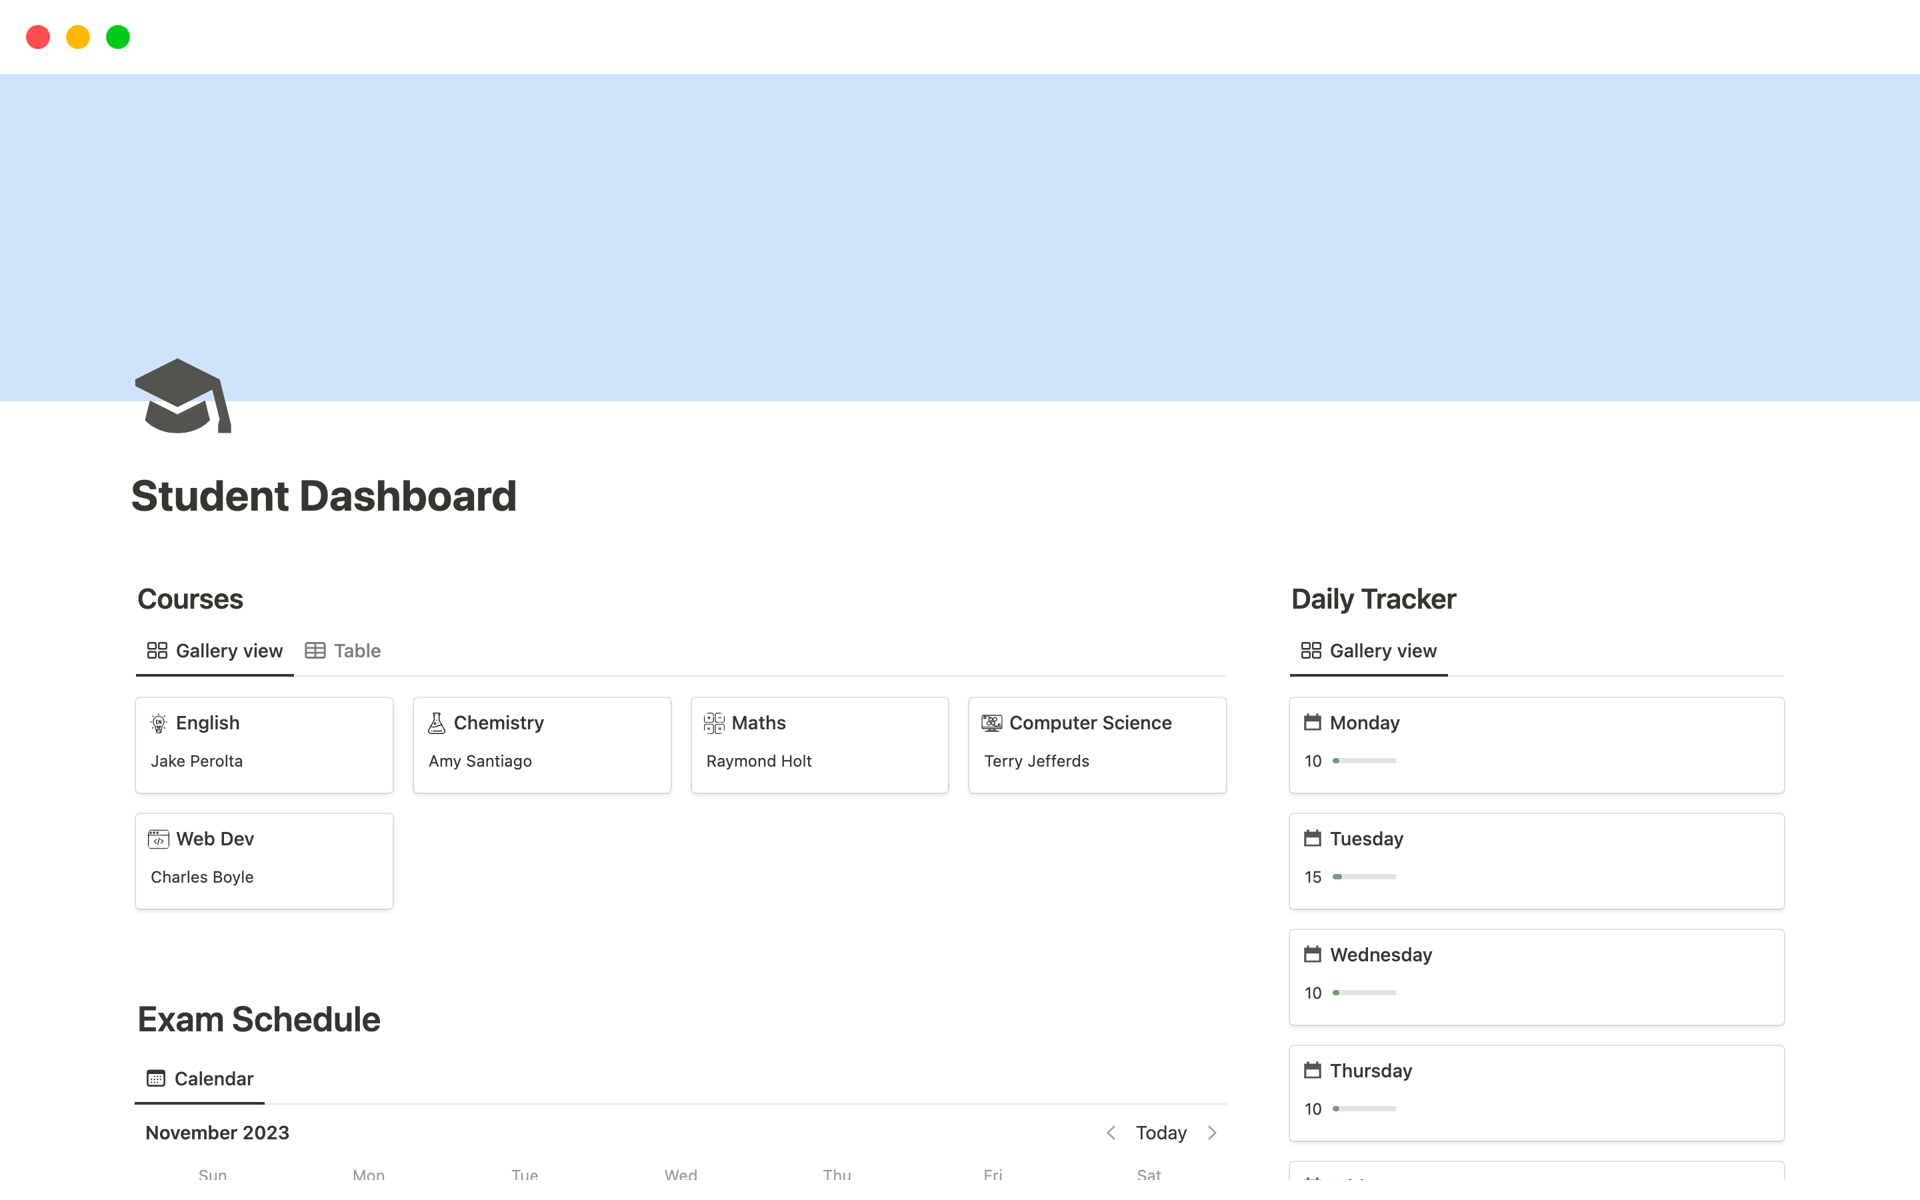 Eine Vorlagenvorschau für Ultimate Student Dashboard